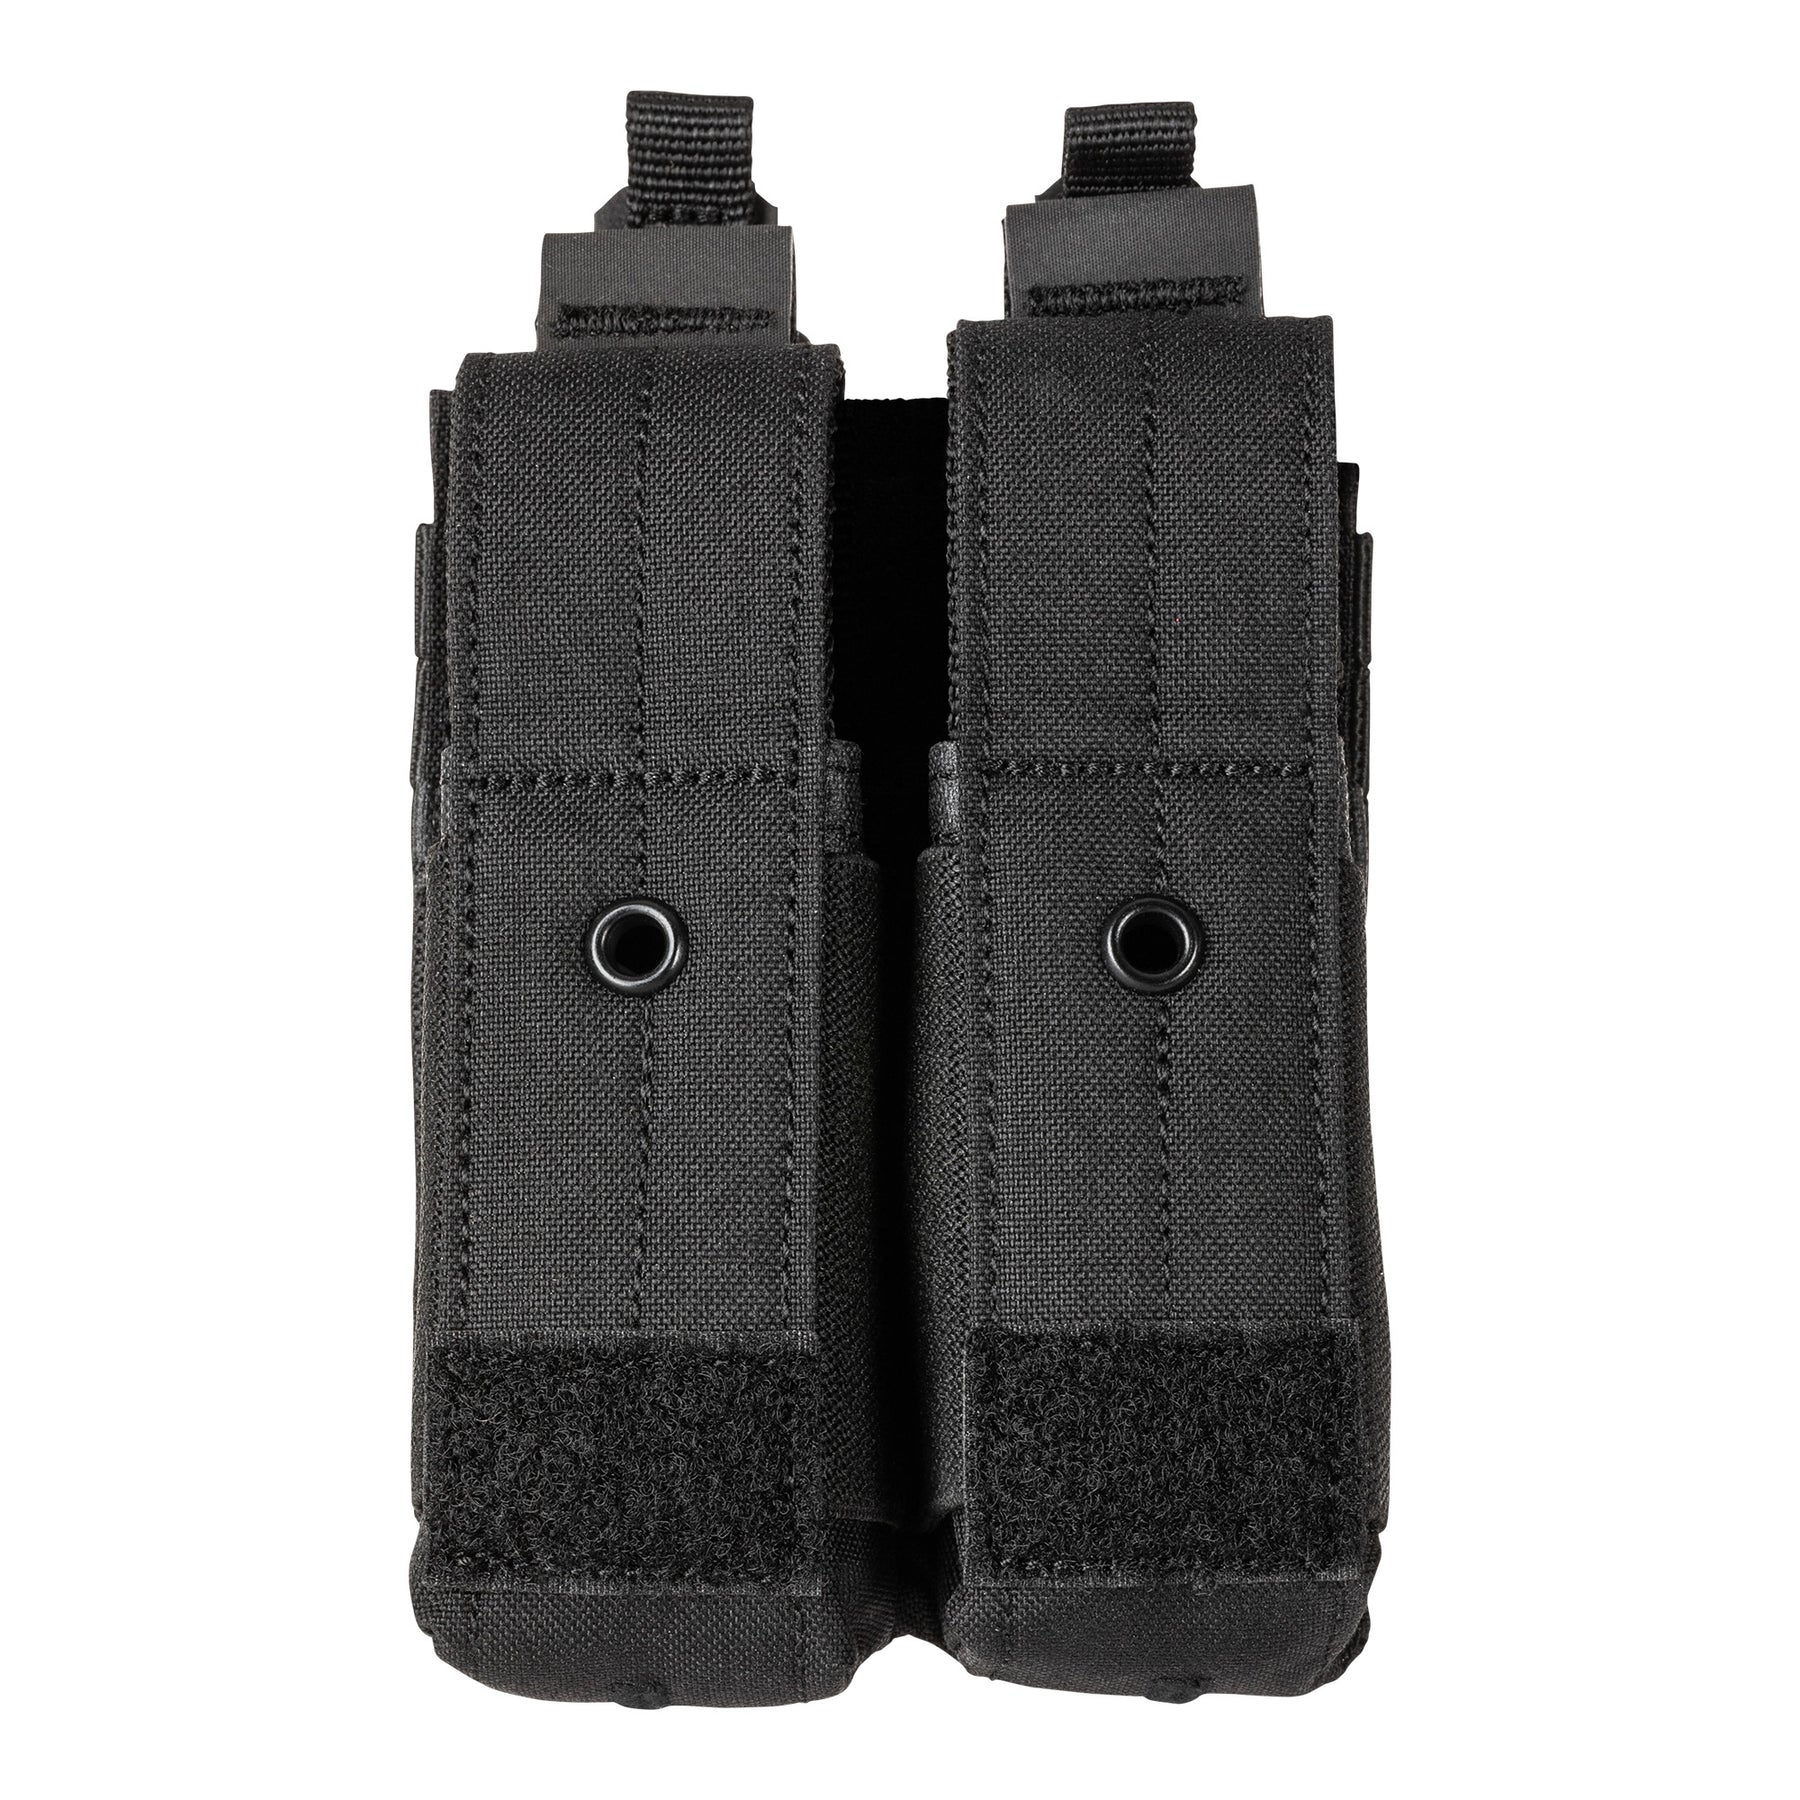 5.11 |  FLEX DOUBLE PISTOL MAG COVER POUCH - Tasca porta caricatore doppia per pistola